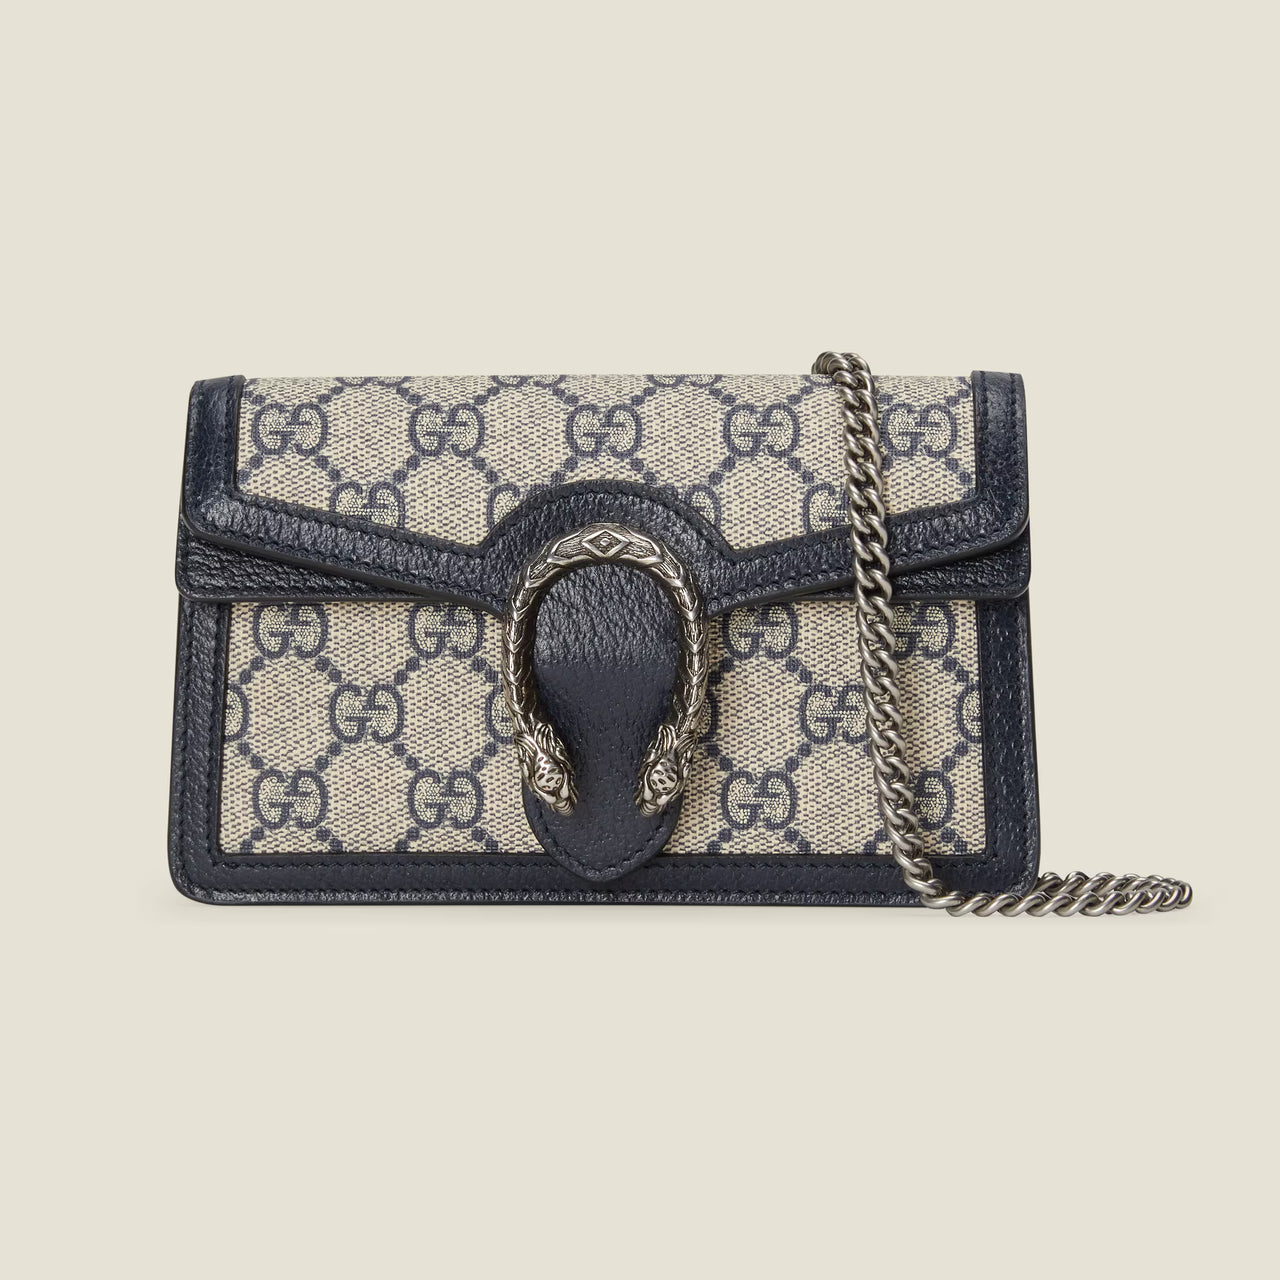 Gucci Dionysus GG Super Mini Bag (Beige & Blue)